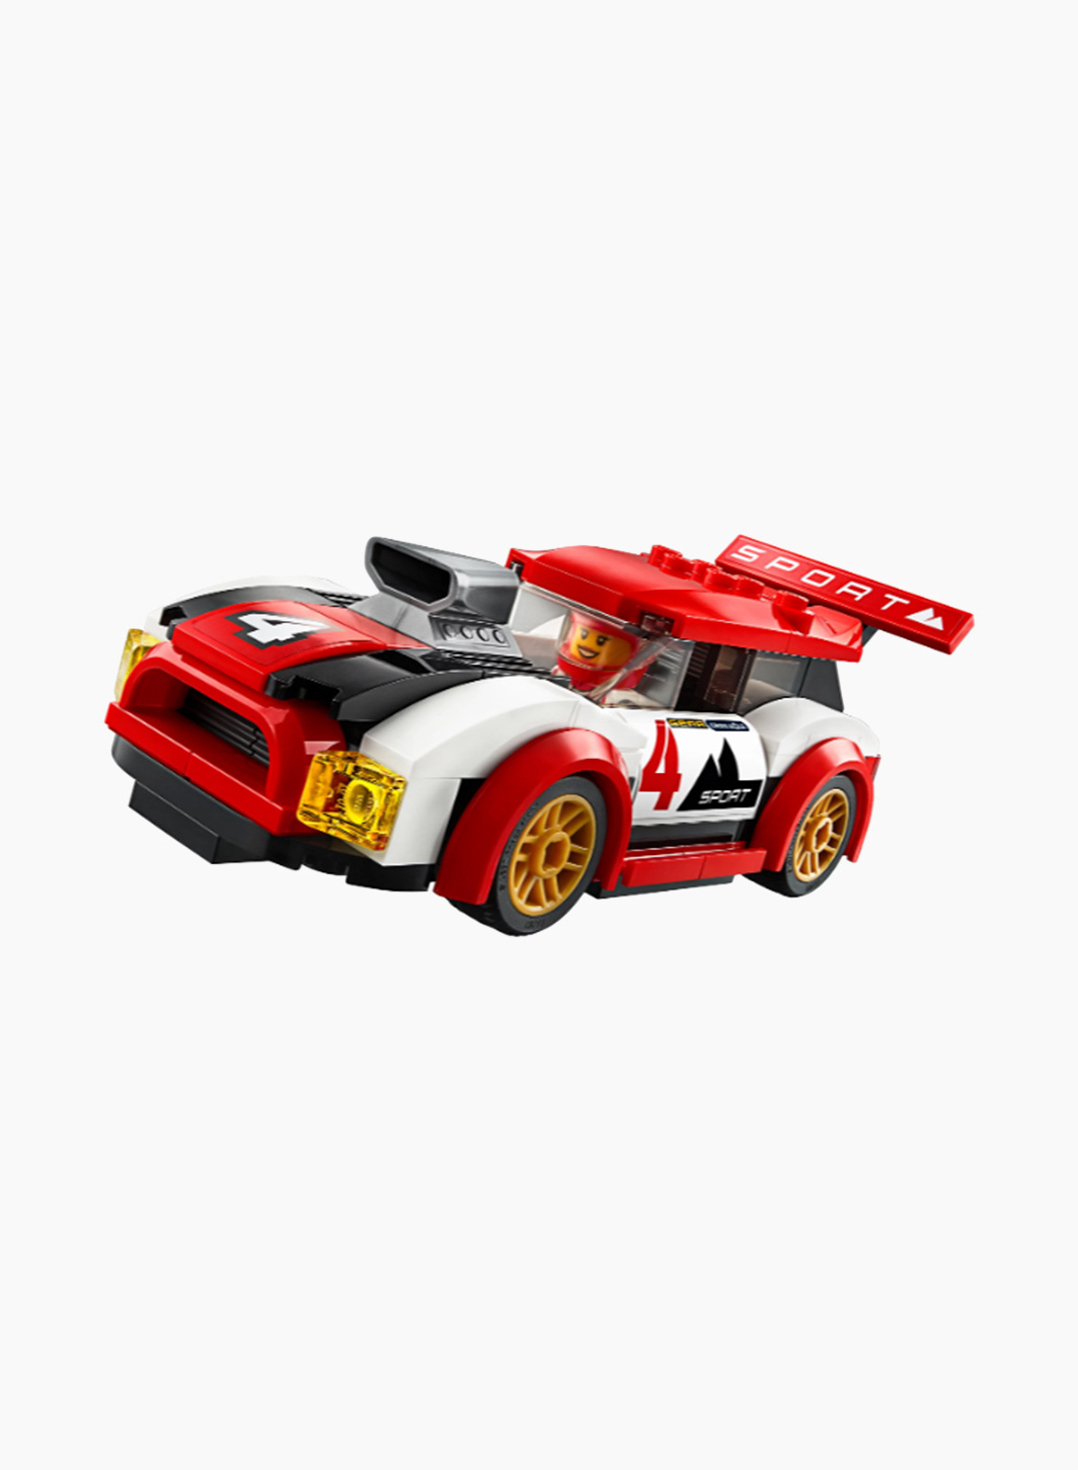 Lego City Կառուցողական Խաղ «Մրցարշավային ավտոմեքենաներ»